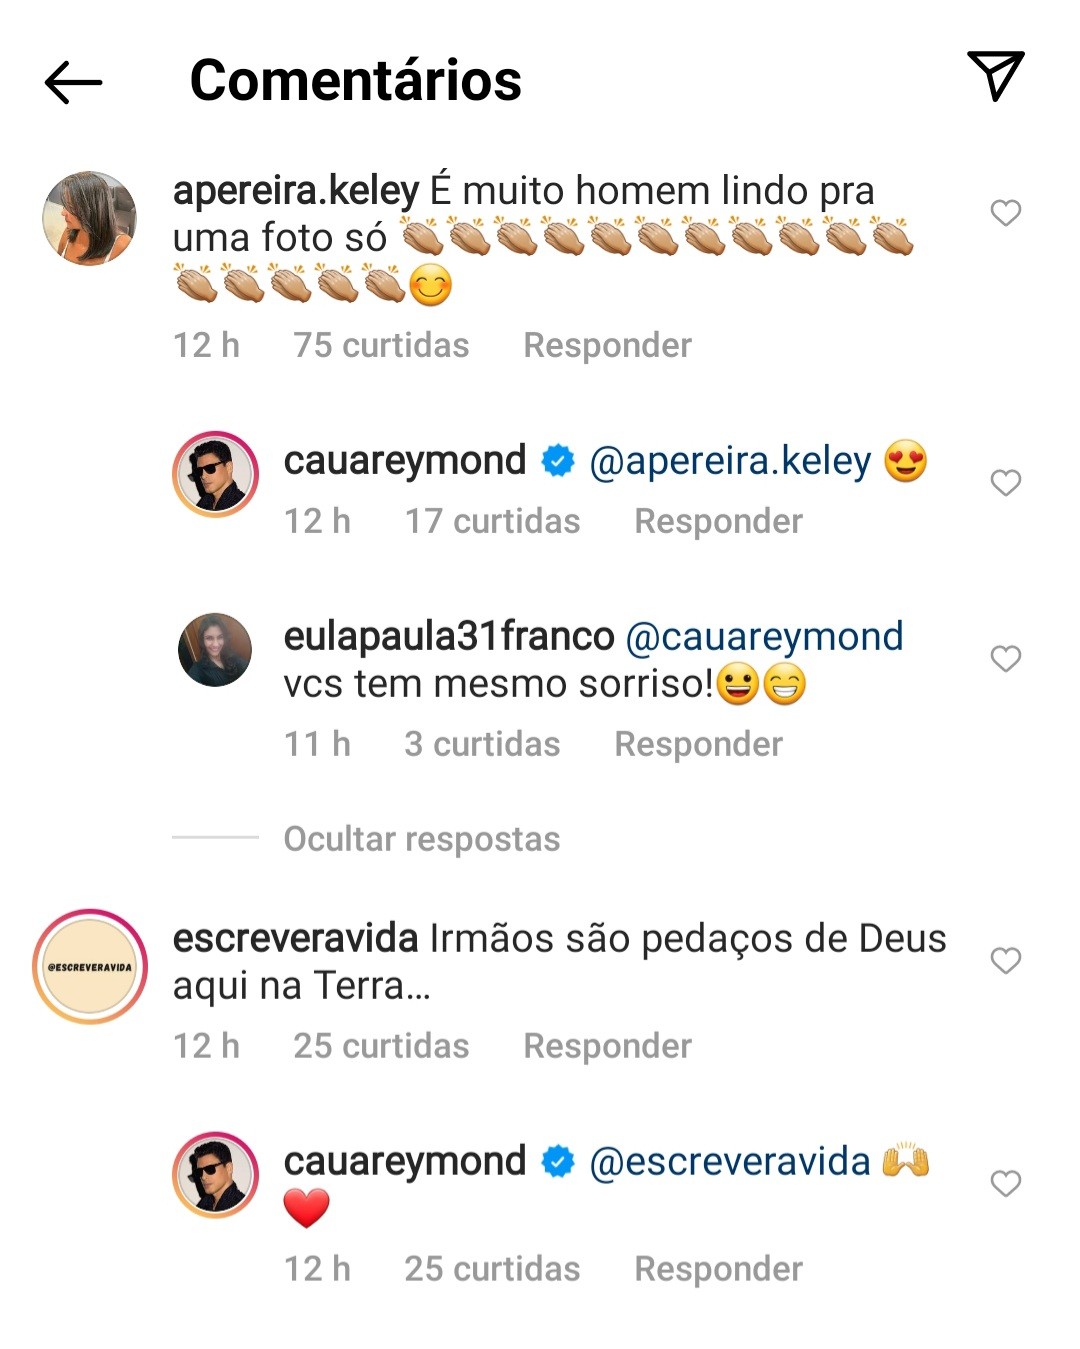 Seguidores interagem com Cauã e Pável Reymond no Instagram  (Foto: Reprodução / Instagram )